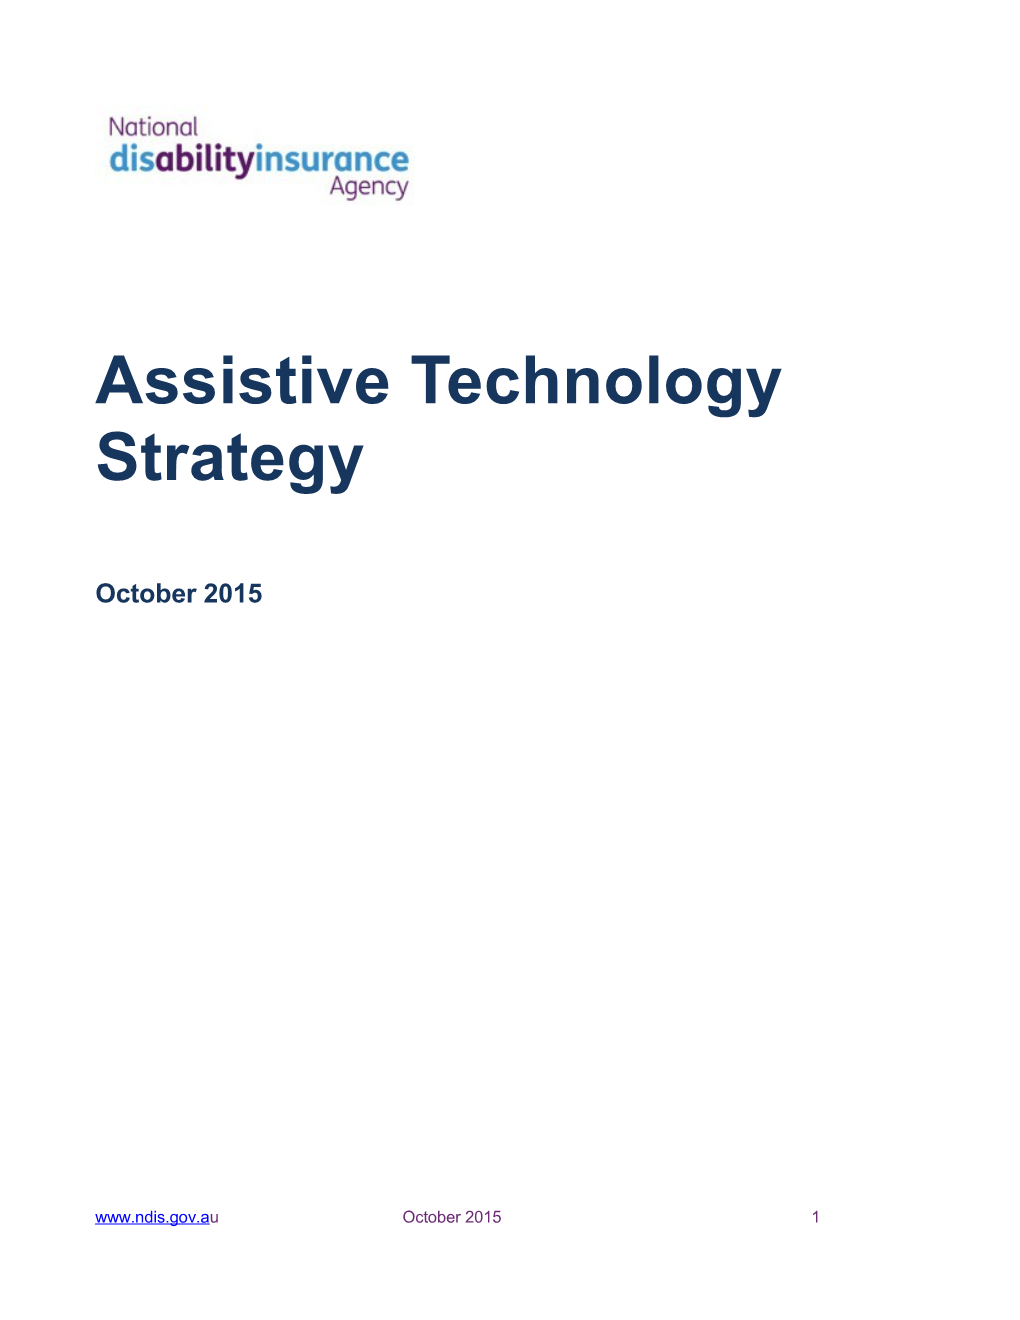 Assistive Technology Strategy